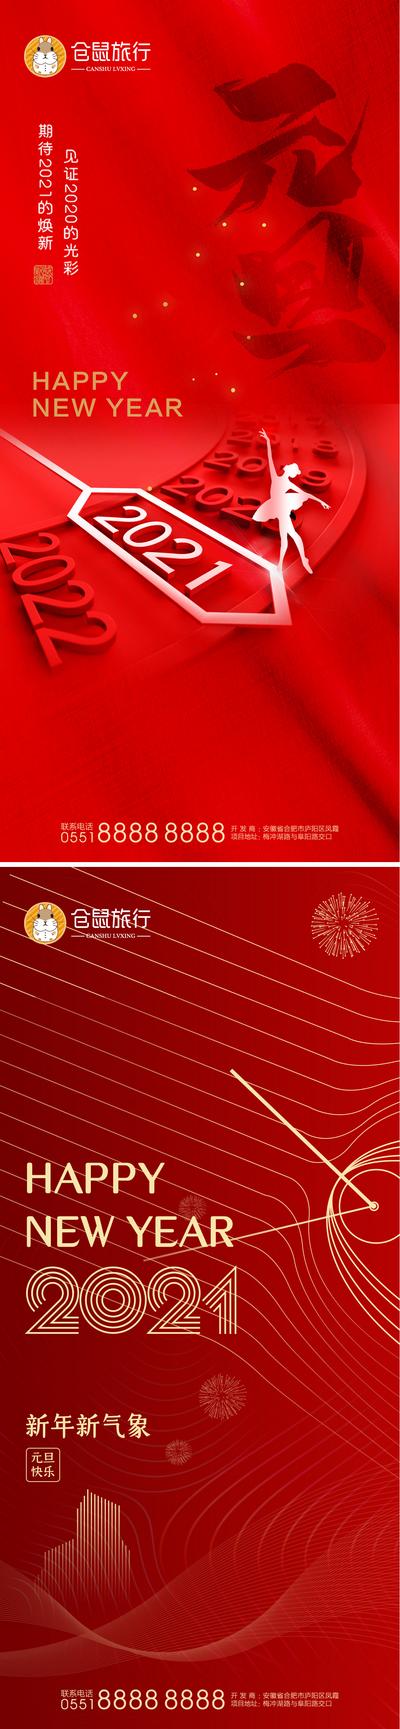 南门网 海报 元旦 公历节日 新年 2021 数字 红金 跨年 指针